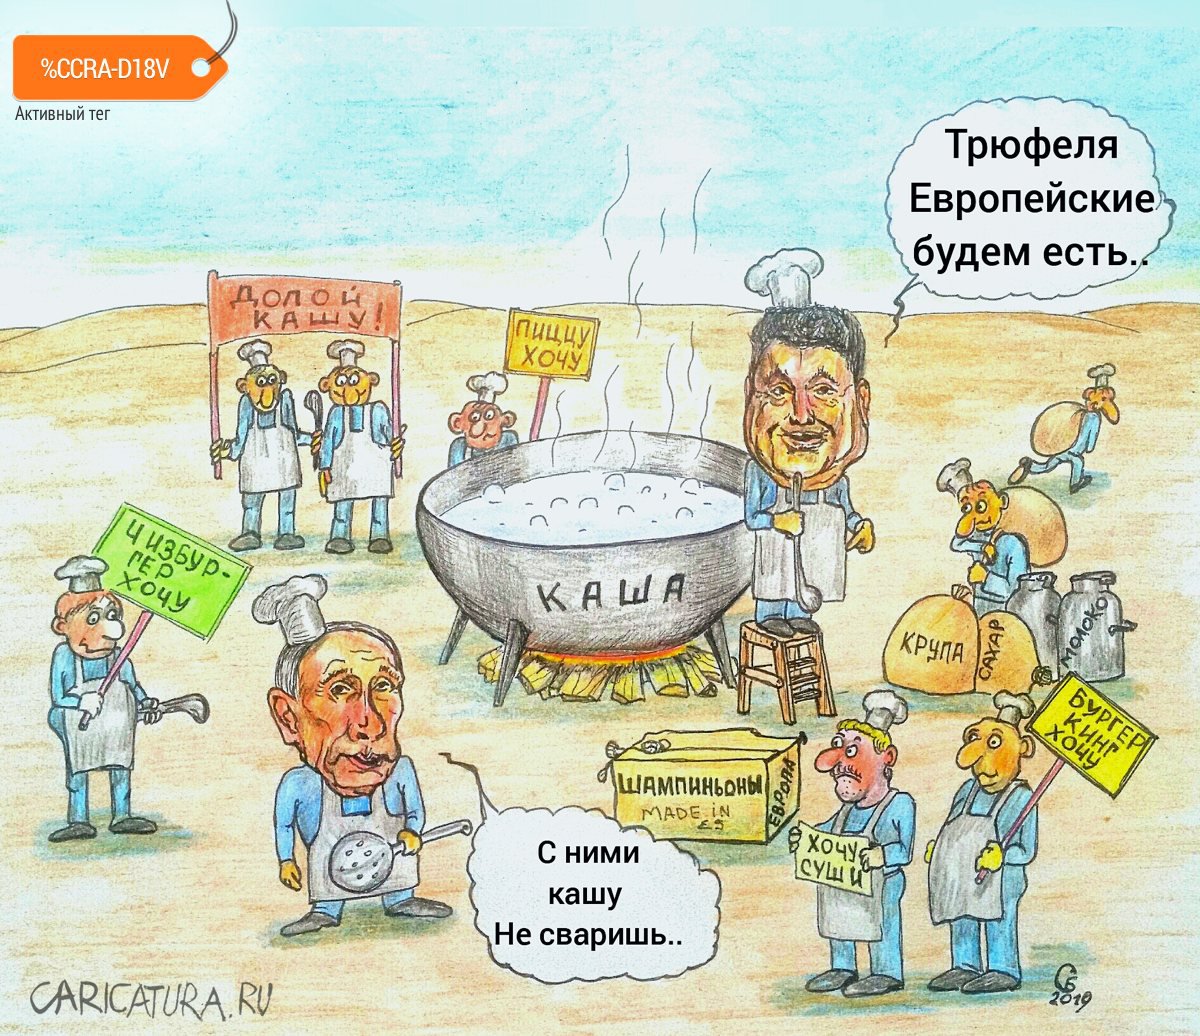 Карикатура "Политическая кухня", Сергей Боровиков